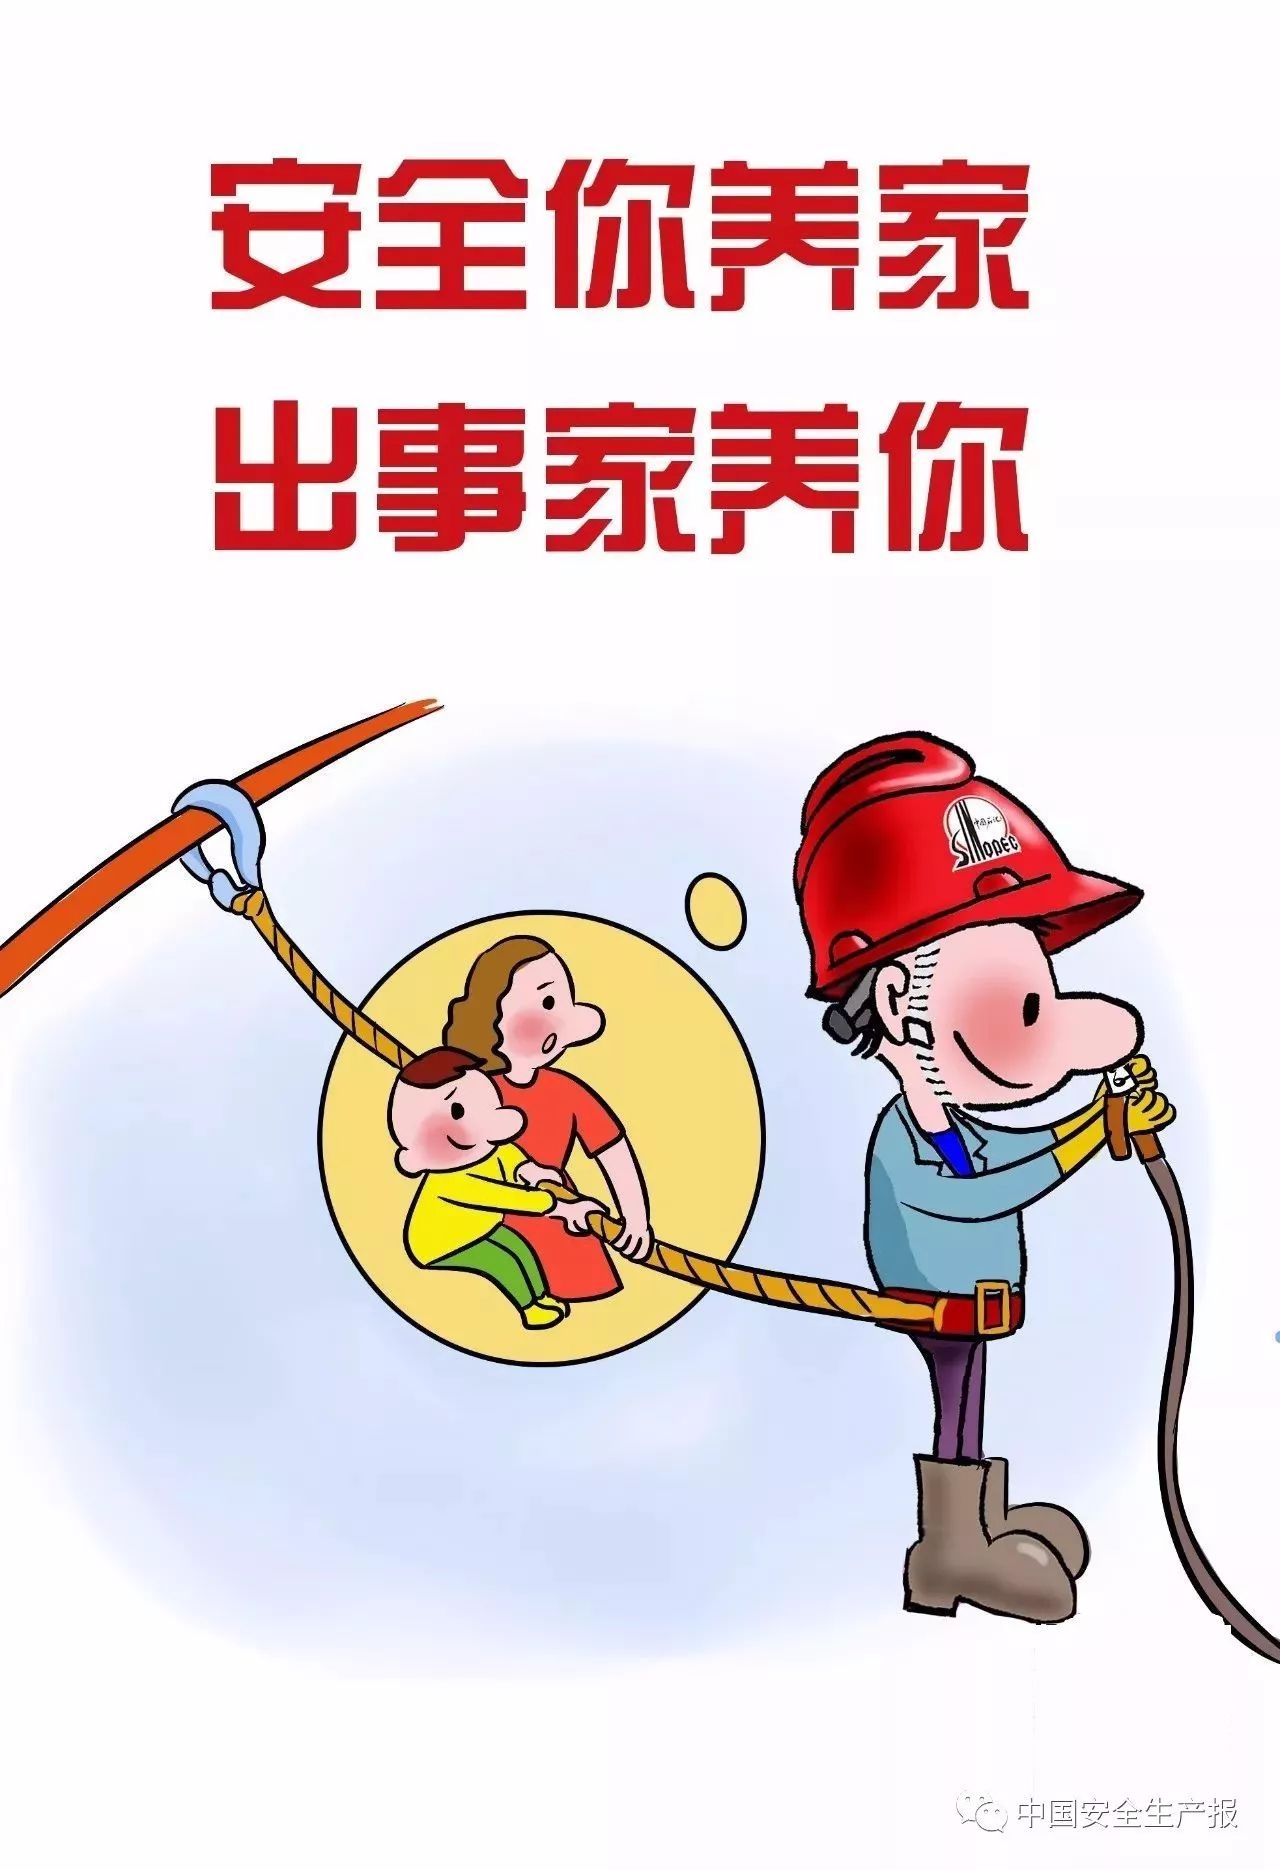 漫画版《河北省学校安全条例》-安全工作处